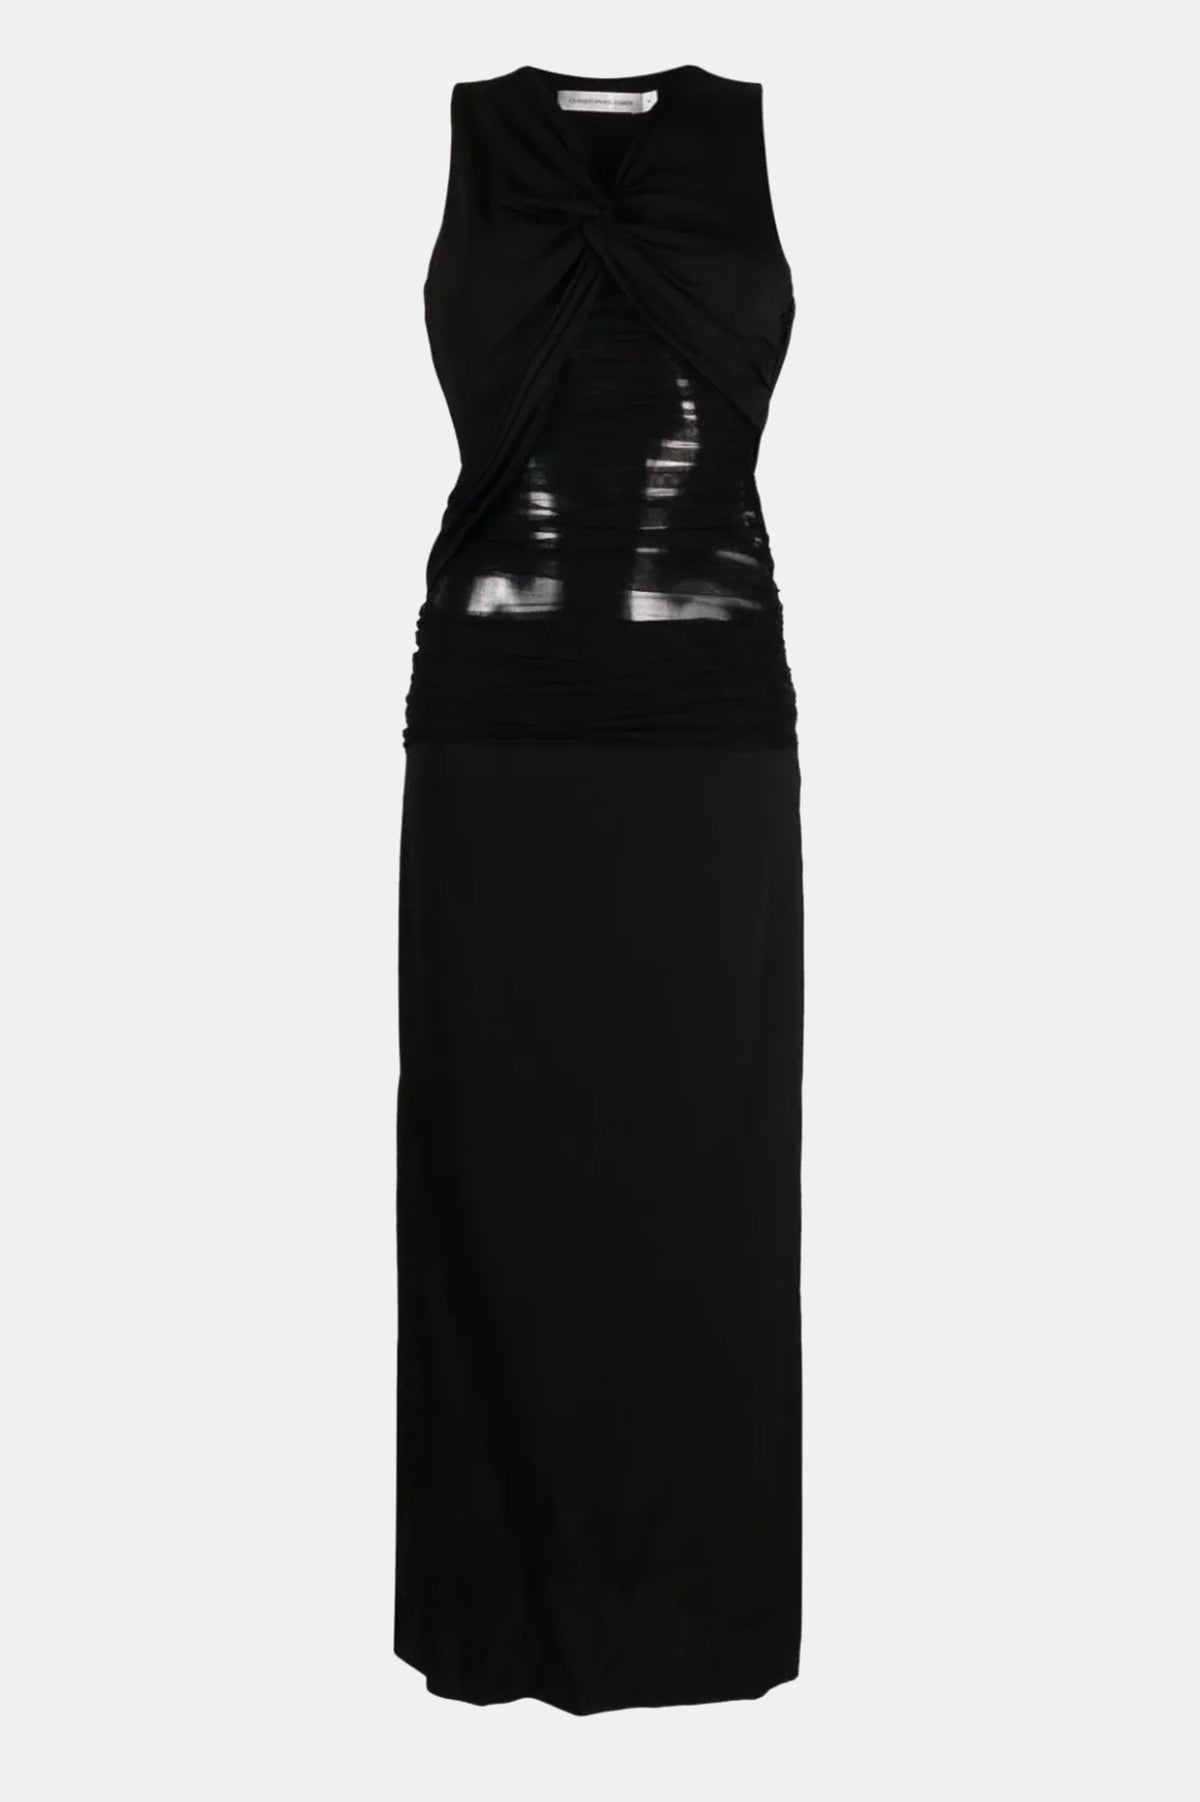 Semblace Tulle Twist Dress in Black